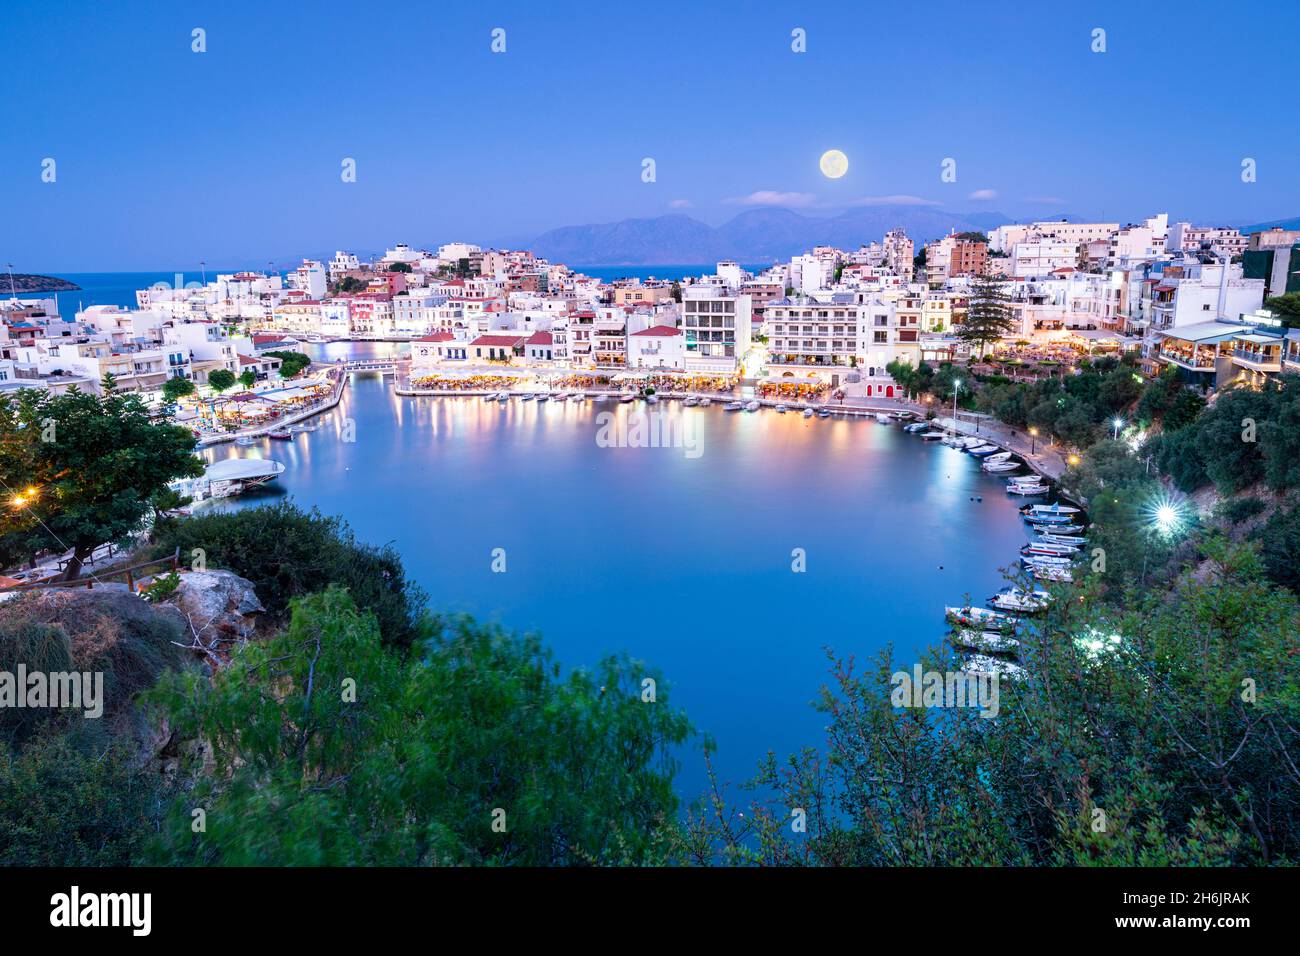 Clair de lune sur la vieille ville d'Agios Nikolaos et lac au crépuscule, préfecture de Lasithi, Crète, Iles grecques, Grèce,Europe Banque D'Images